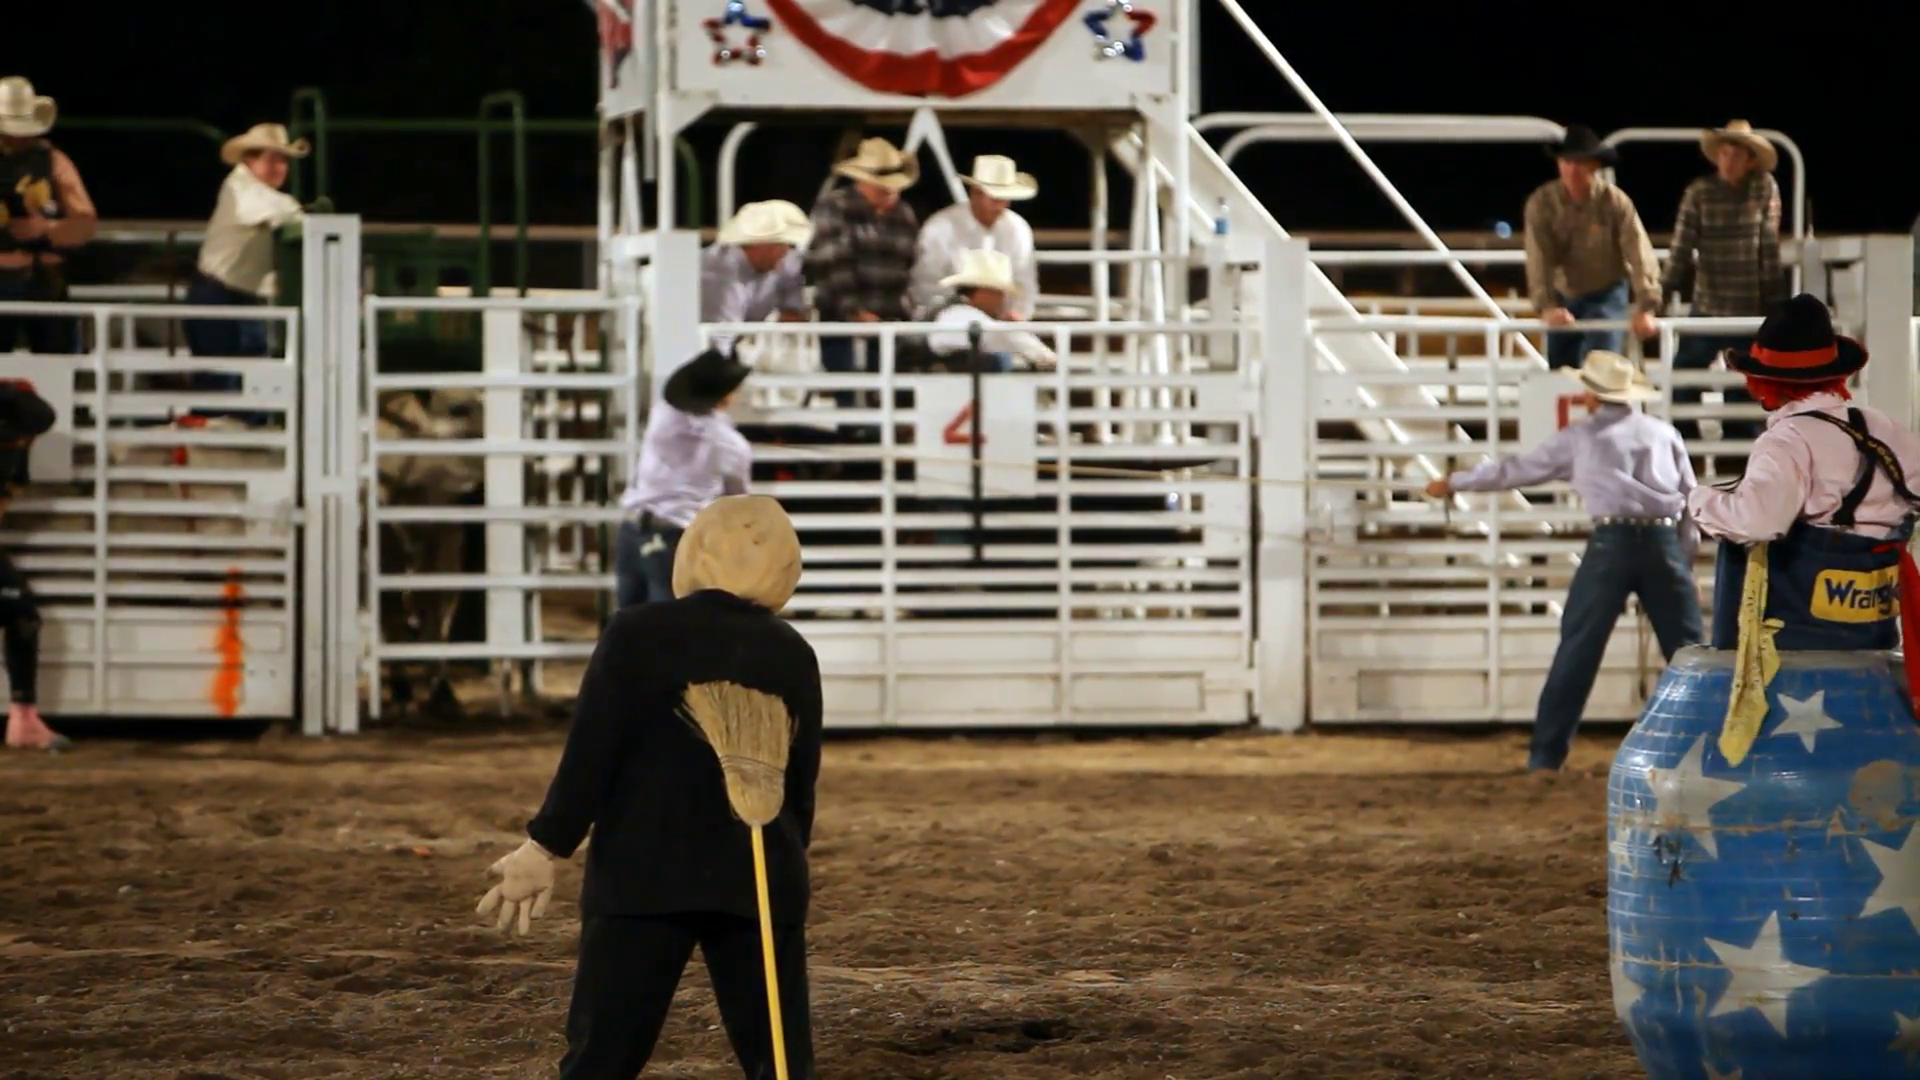 Bull rider stuck on bull at r